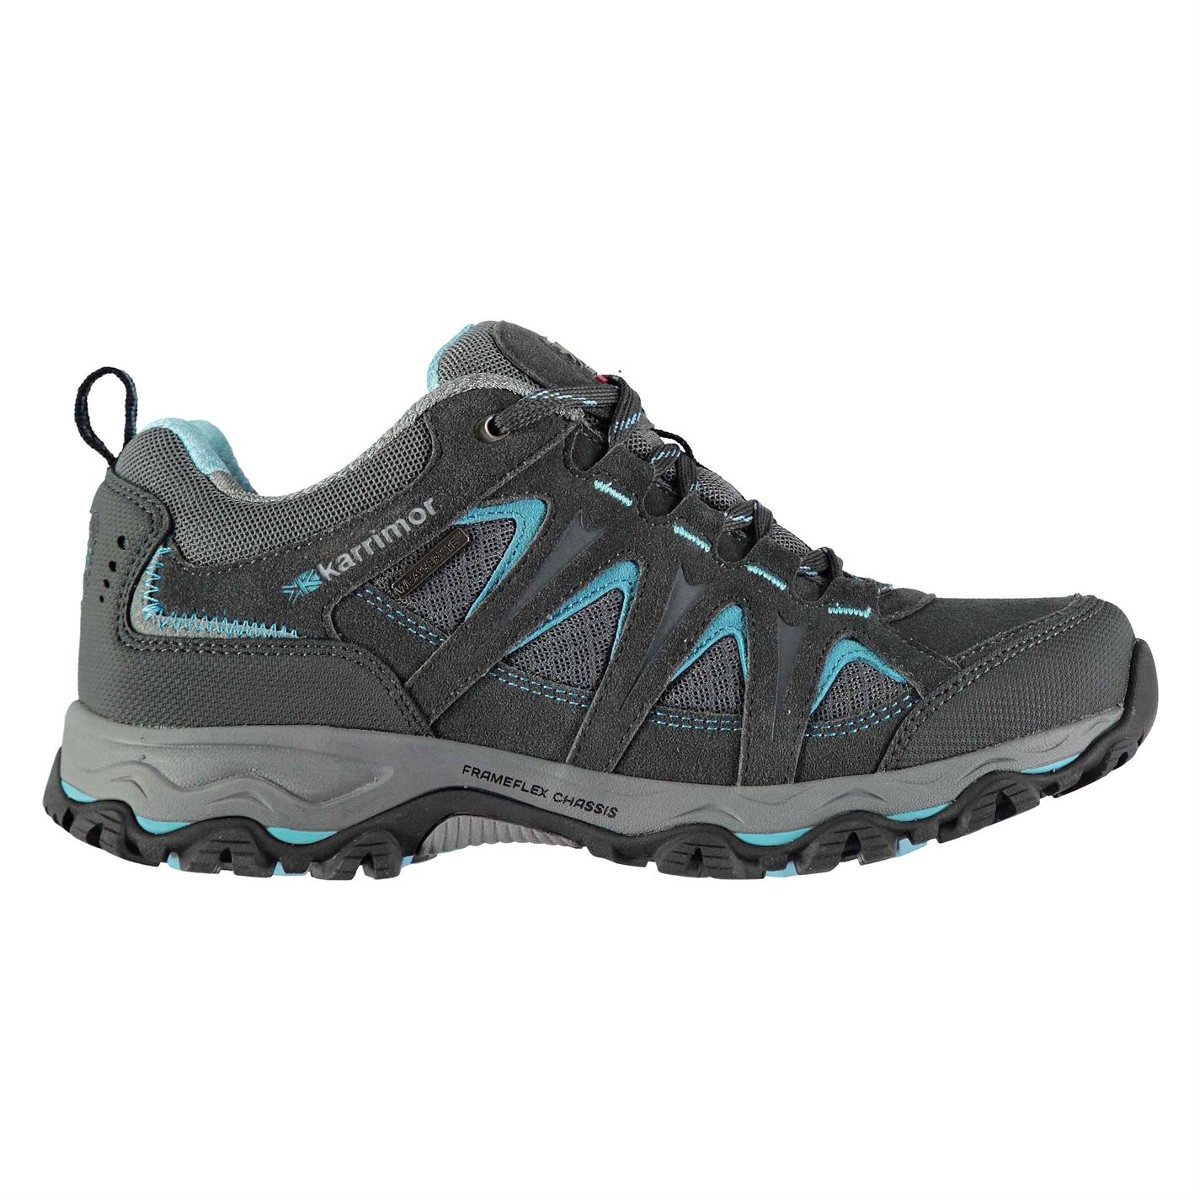 Karrimor Women's Mount Low Waterproof Hiking Shoes - Size 5